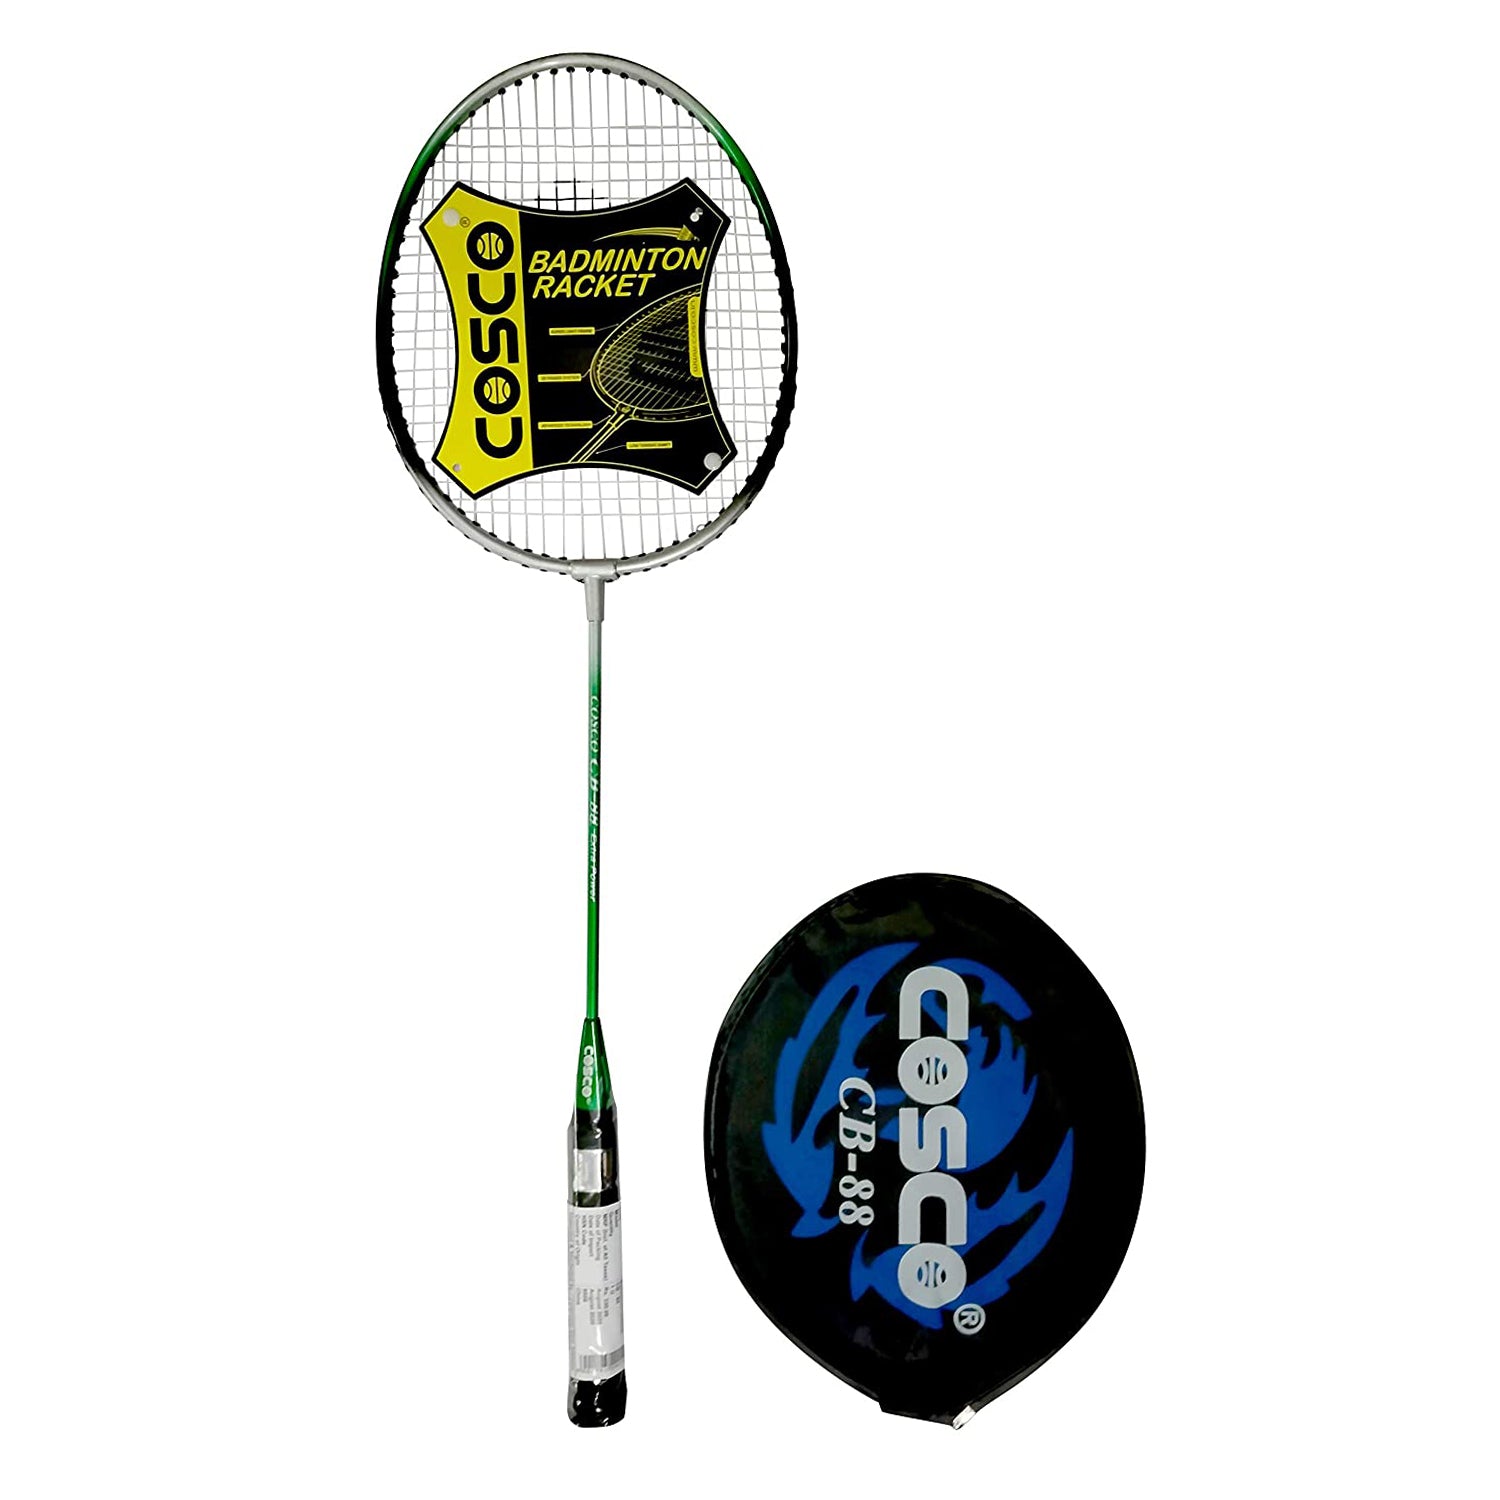 cosco racket price